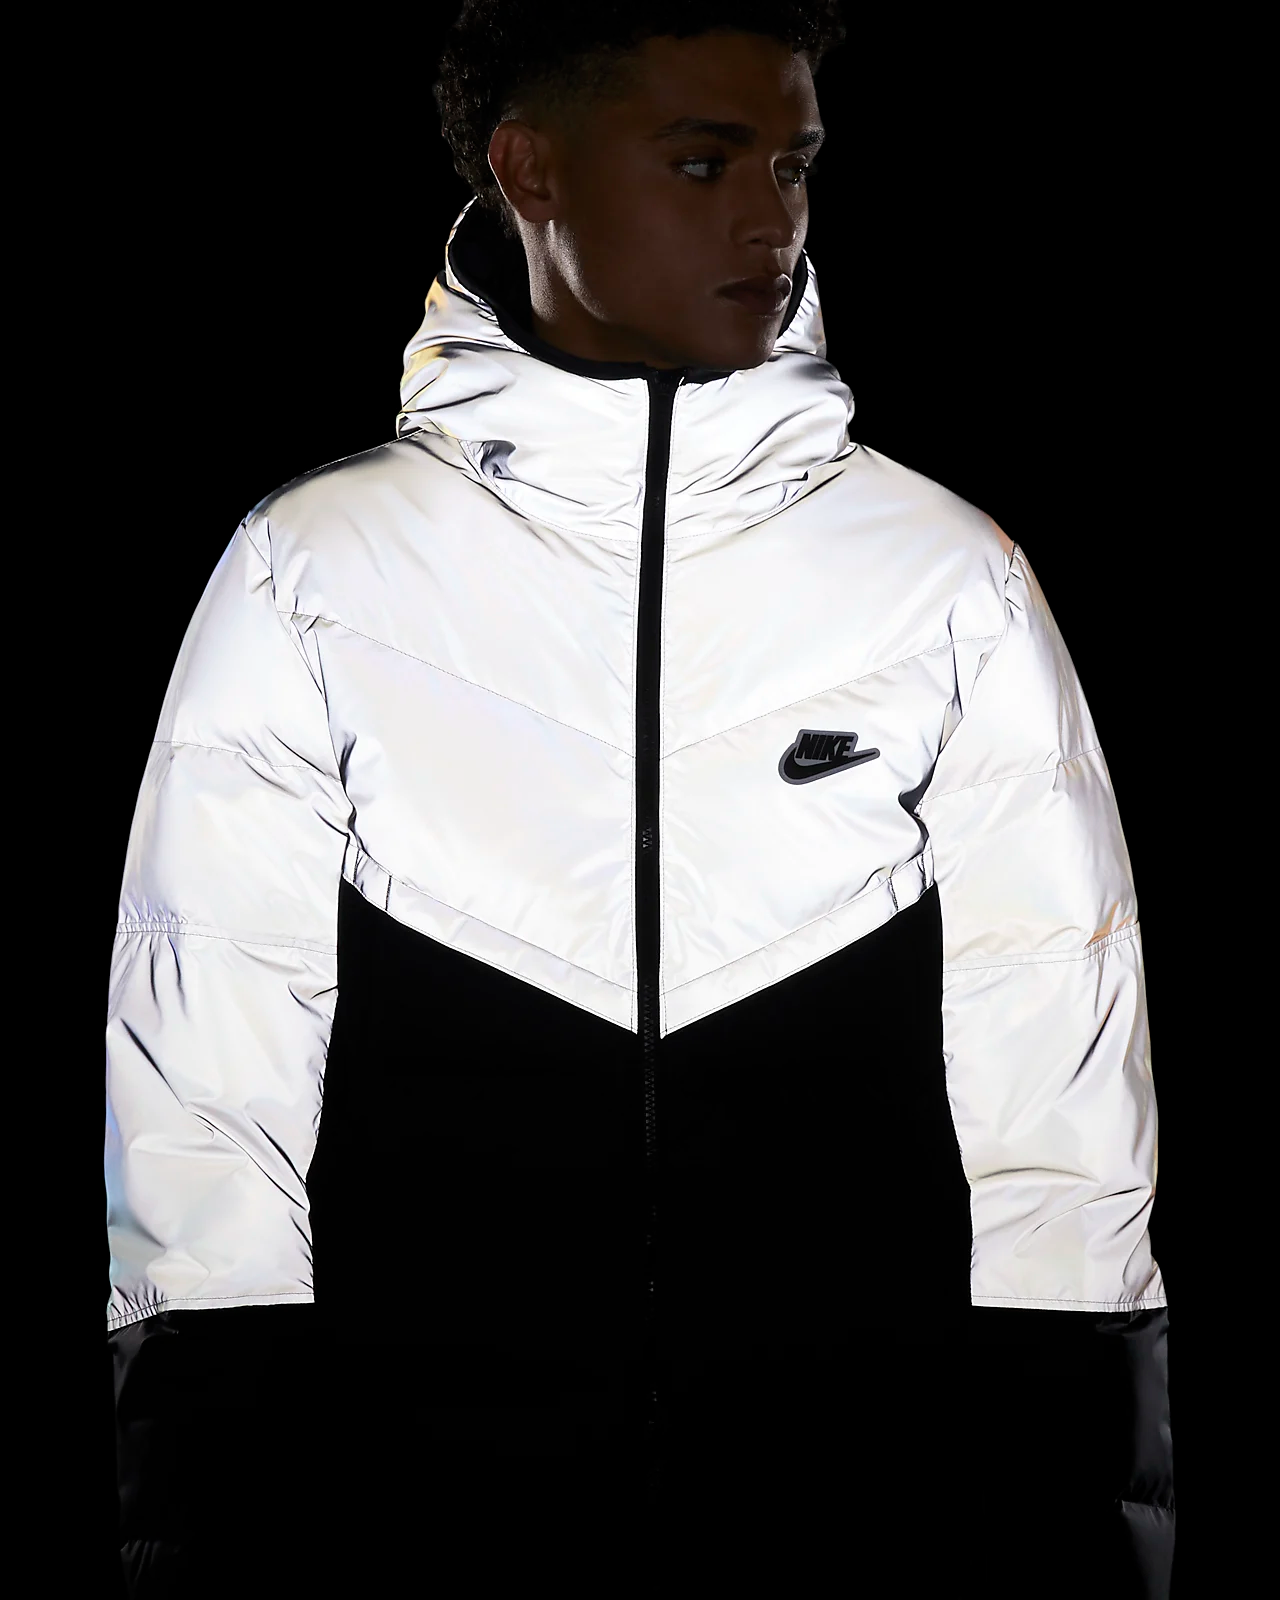 Formulering Getalenteerd holte 50% OFF the Nike Sportswear Windrunner Jacket "Reflective" — Sneaker Shouts